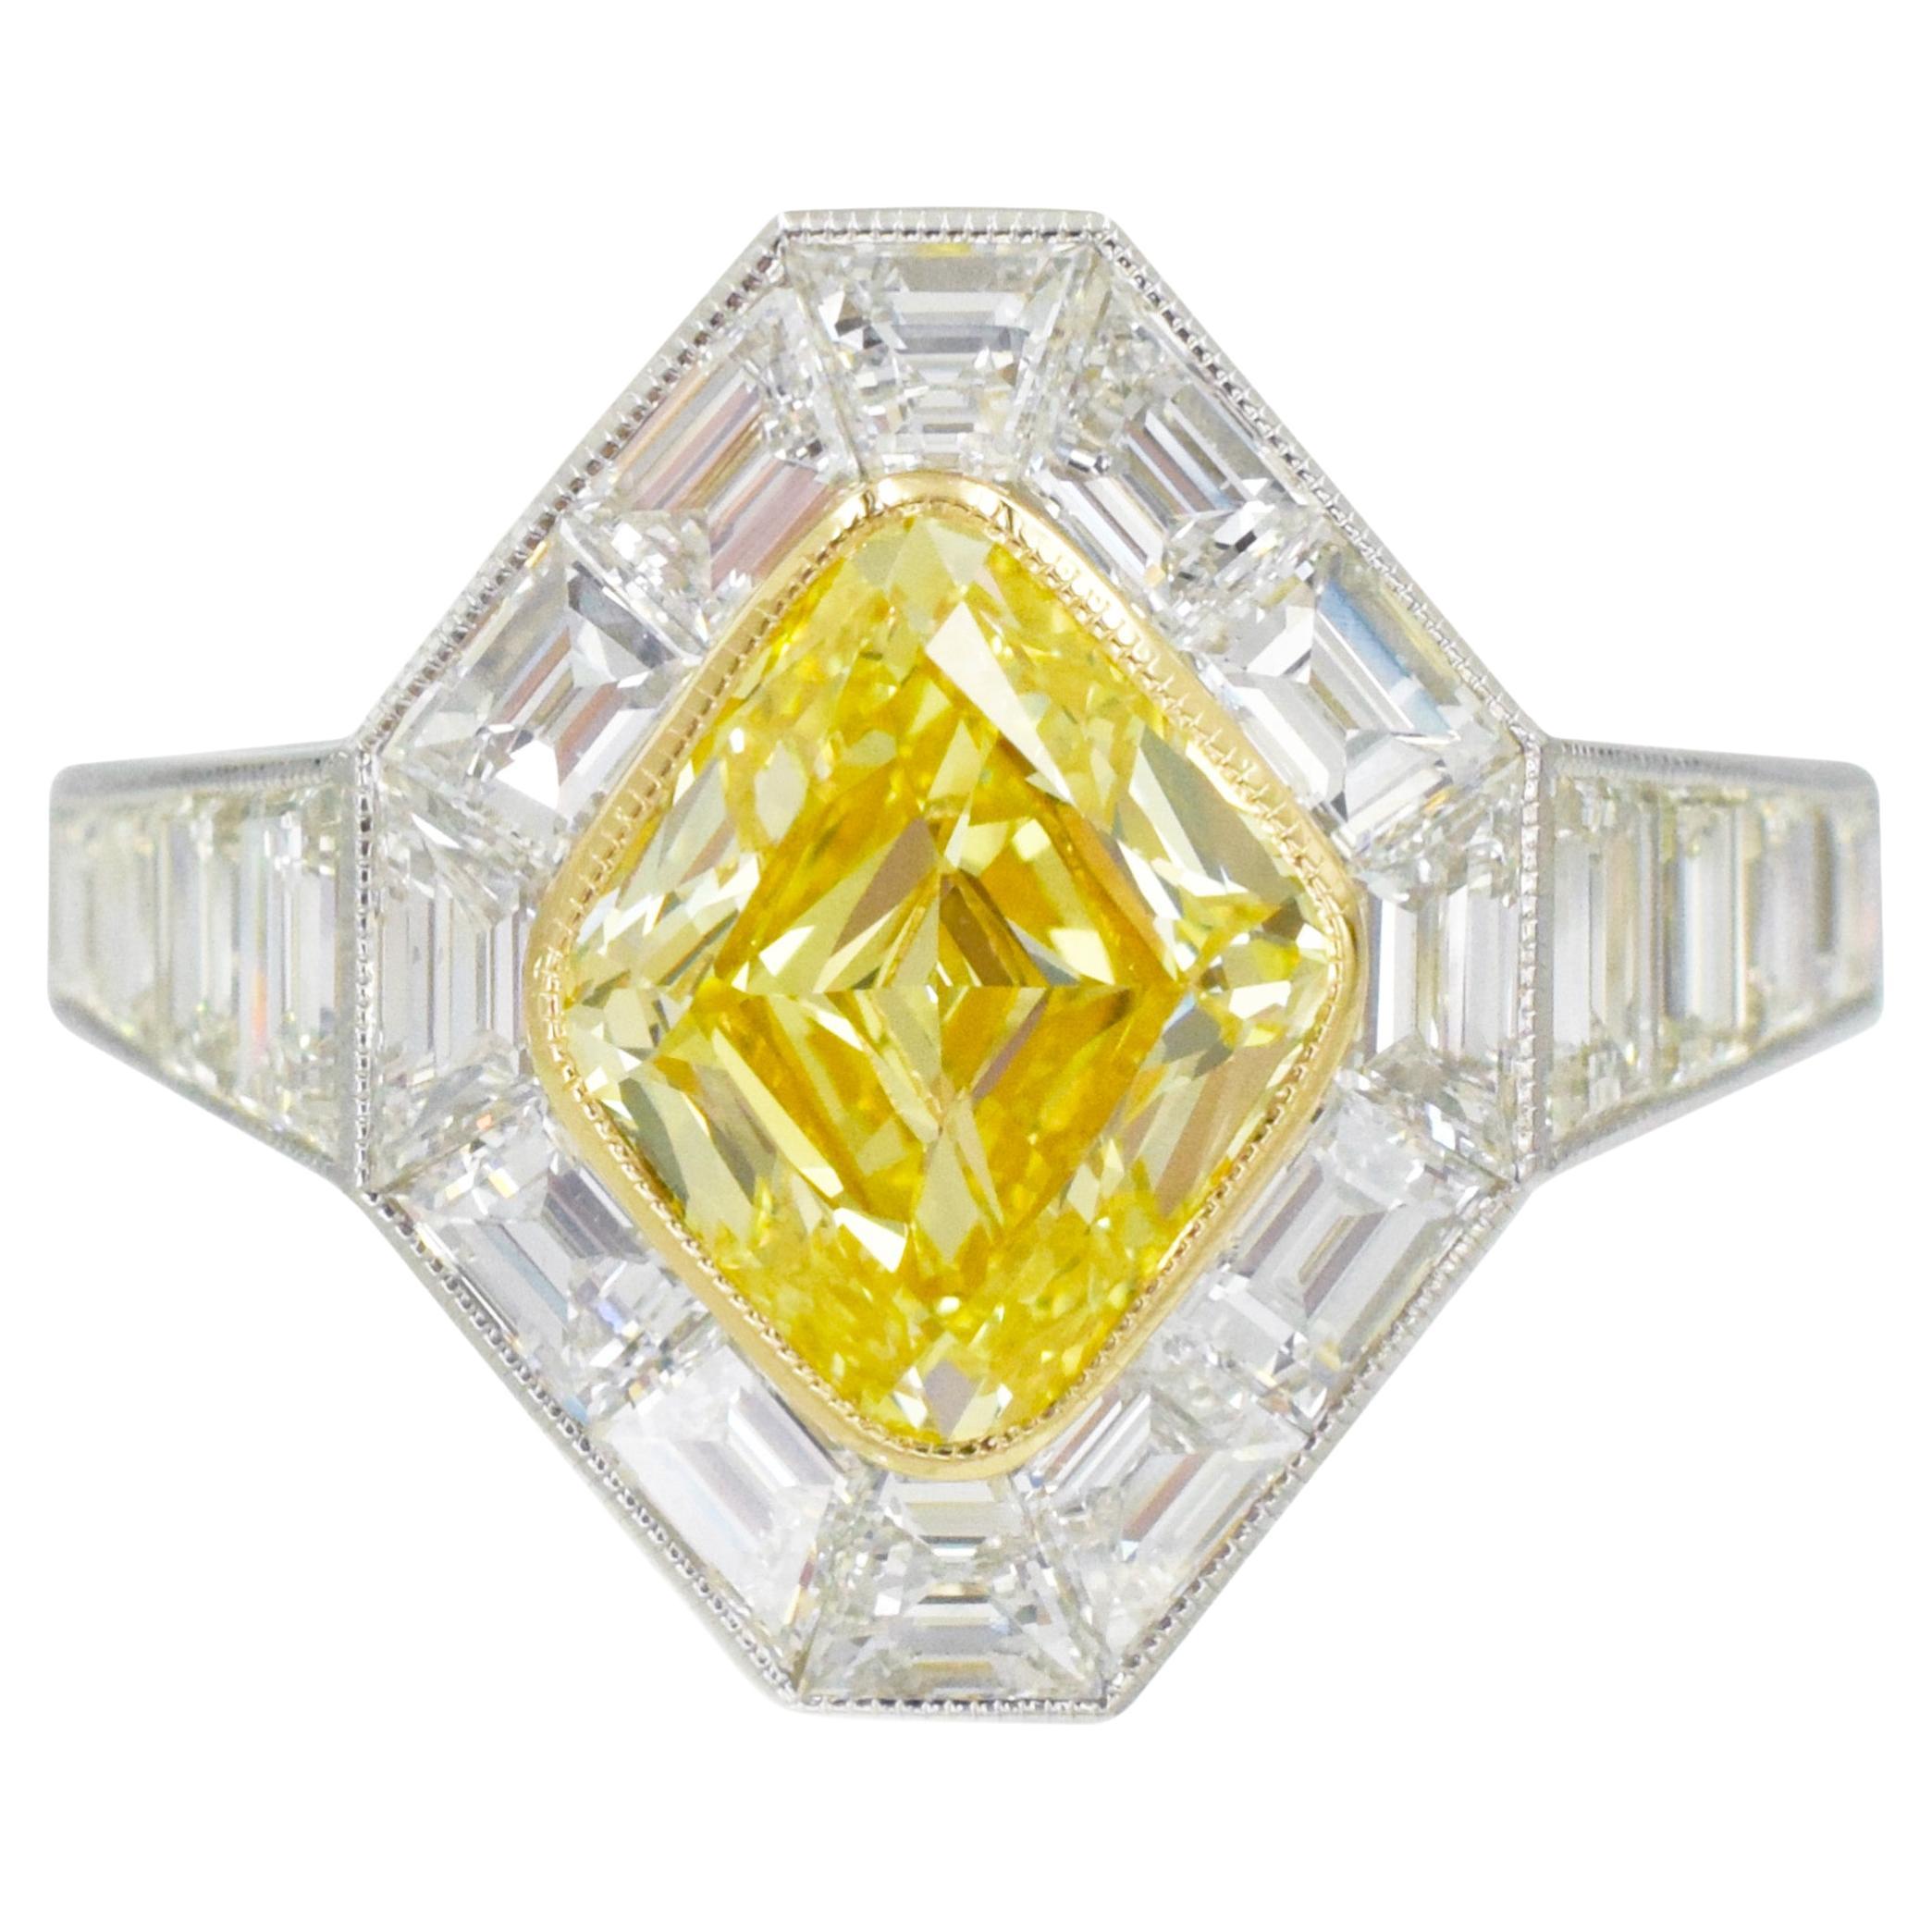 NALLY JEWELS Bague en diamant jaune intense certifié GIA 
Monture en diamant, or et platine.
Cette bague est composée de 18 diamants taillés en escalier pesant au total 1,87 ctw, tous sertis sur platine, avec un diamant central de 2,05 carats de